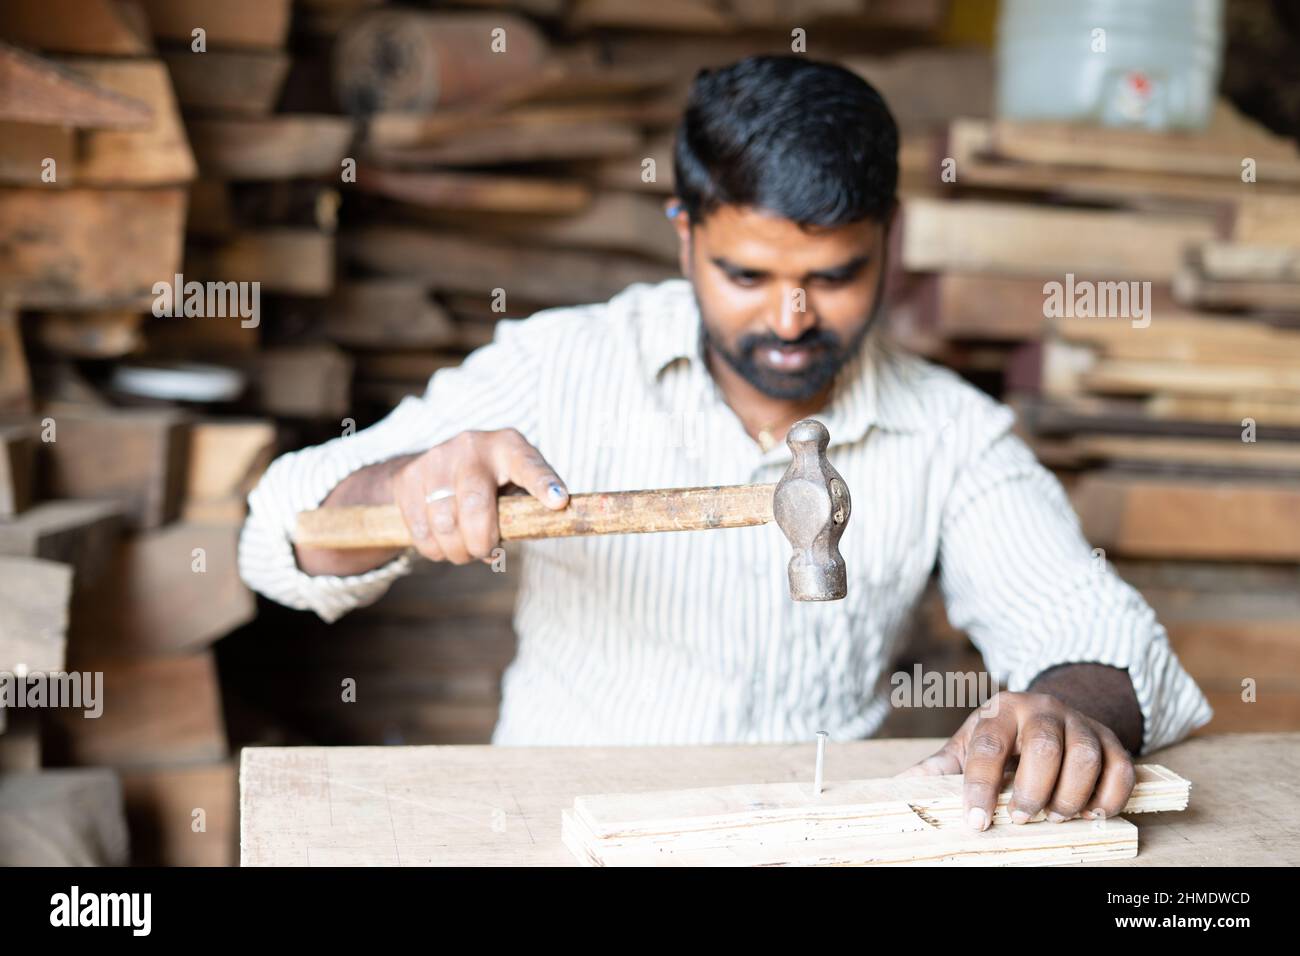 Foucs auf Hammer, junge indische Schreiner beschäftigt schlagen Nägel mit Hammer zu Holz in der Werkstatt - Konzept der Handwerker, blauen Kragen Arbeit und qualifizierte Handarbeit Stockfoto